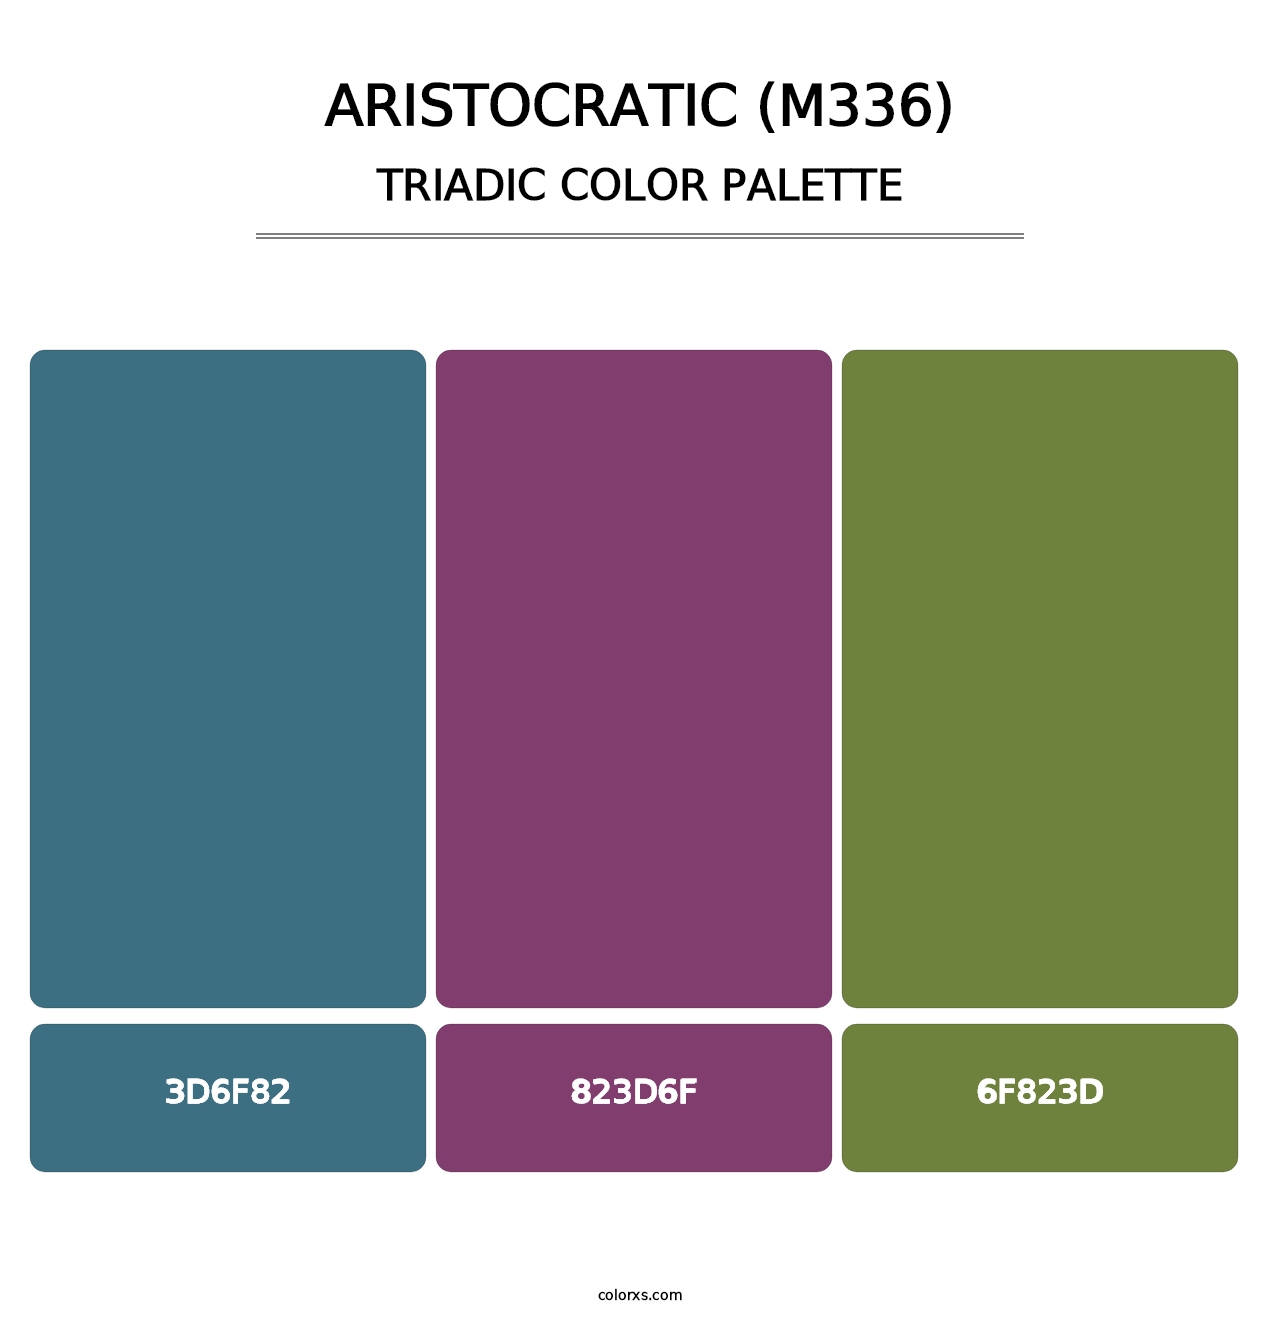 Aristocratic (M336) - Triadic Color Palette